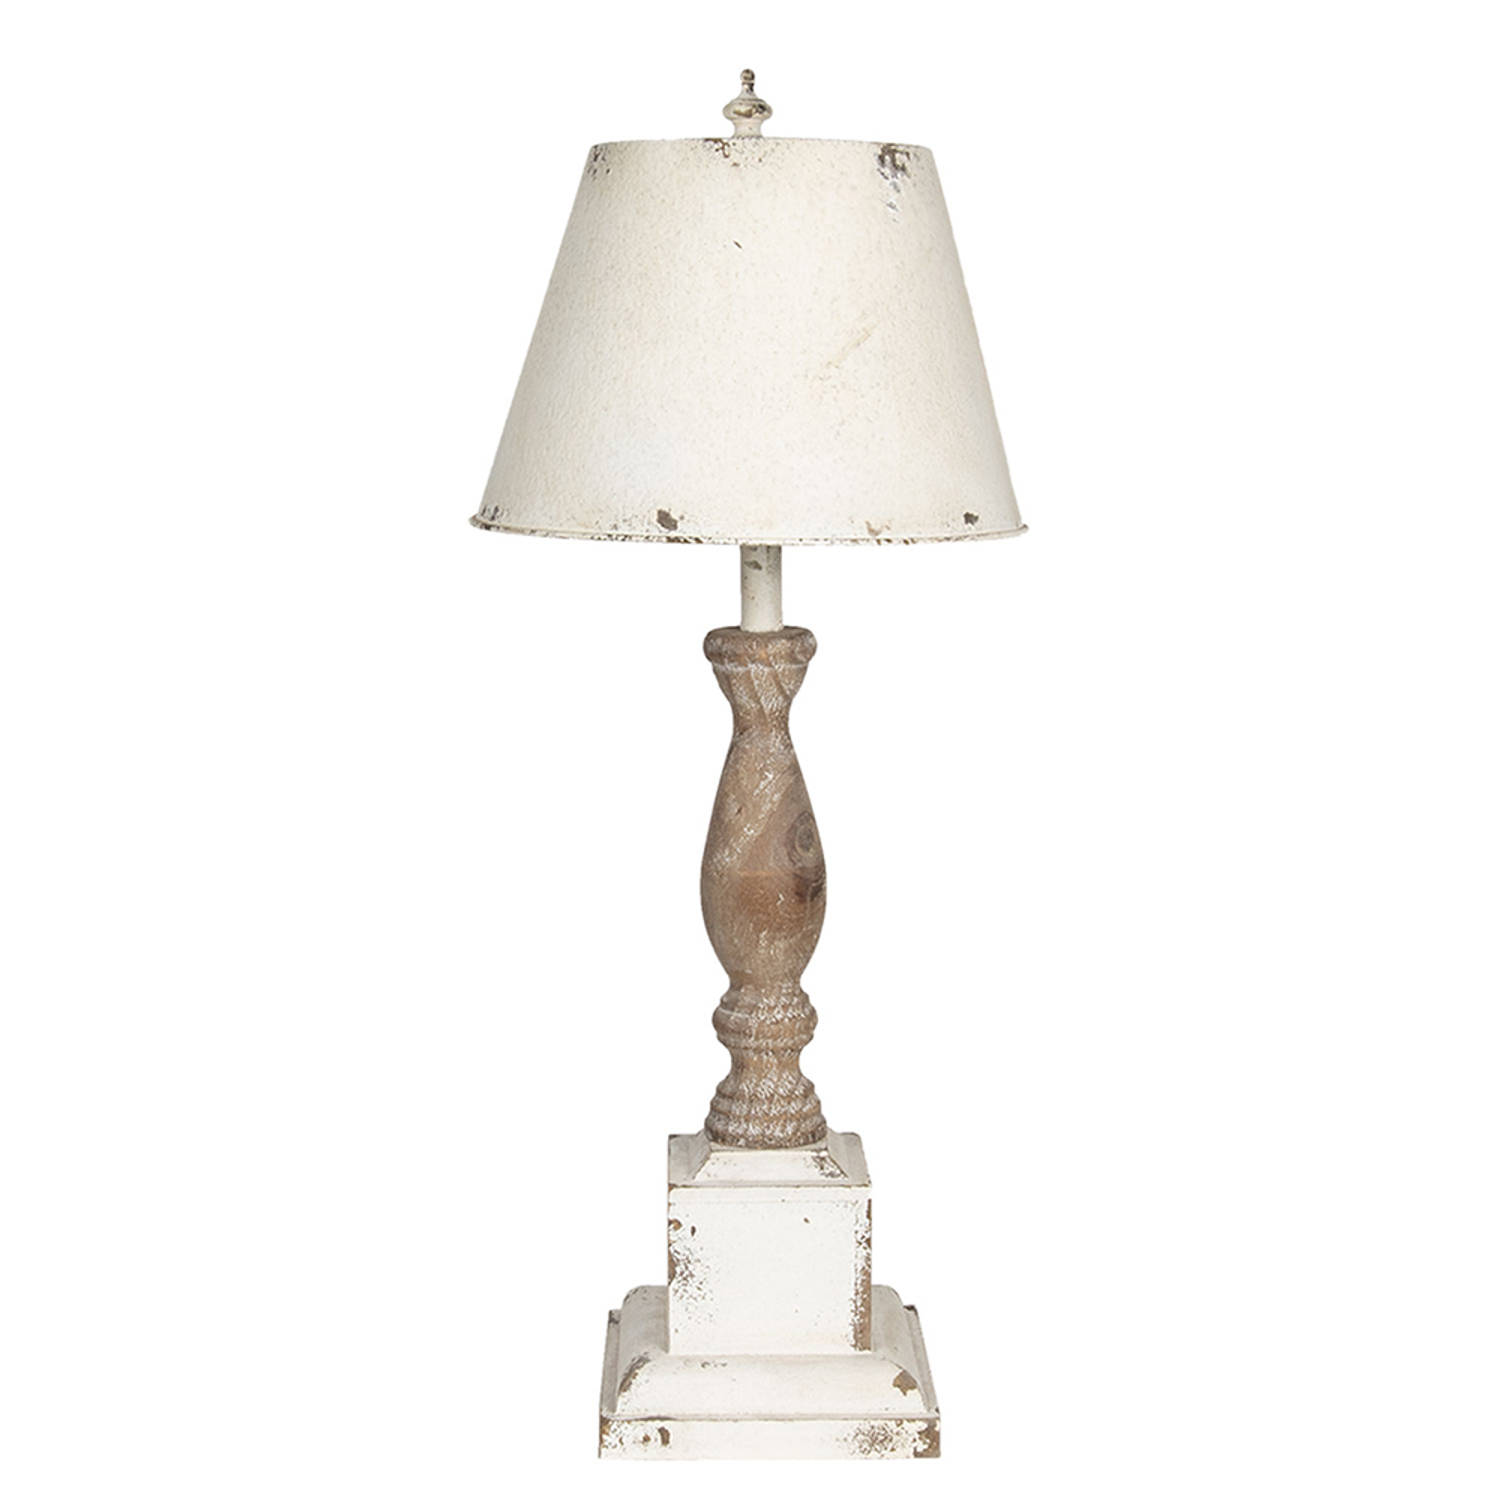 HAES DECO - Tafellamp - Shabby Chic -Vintage / Retro Lamp, formaat Ø 30x76 cm - Wit / Bruin, Hout met Metaal - Bureaulamp, Sfeerlamp, Nachtlampje